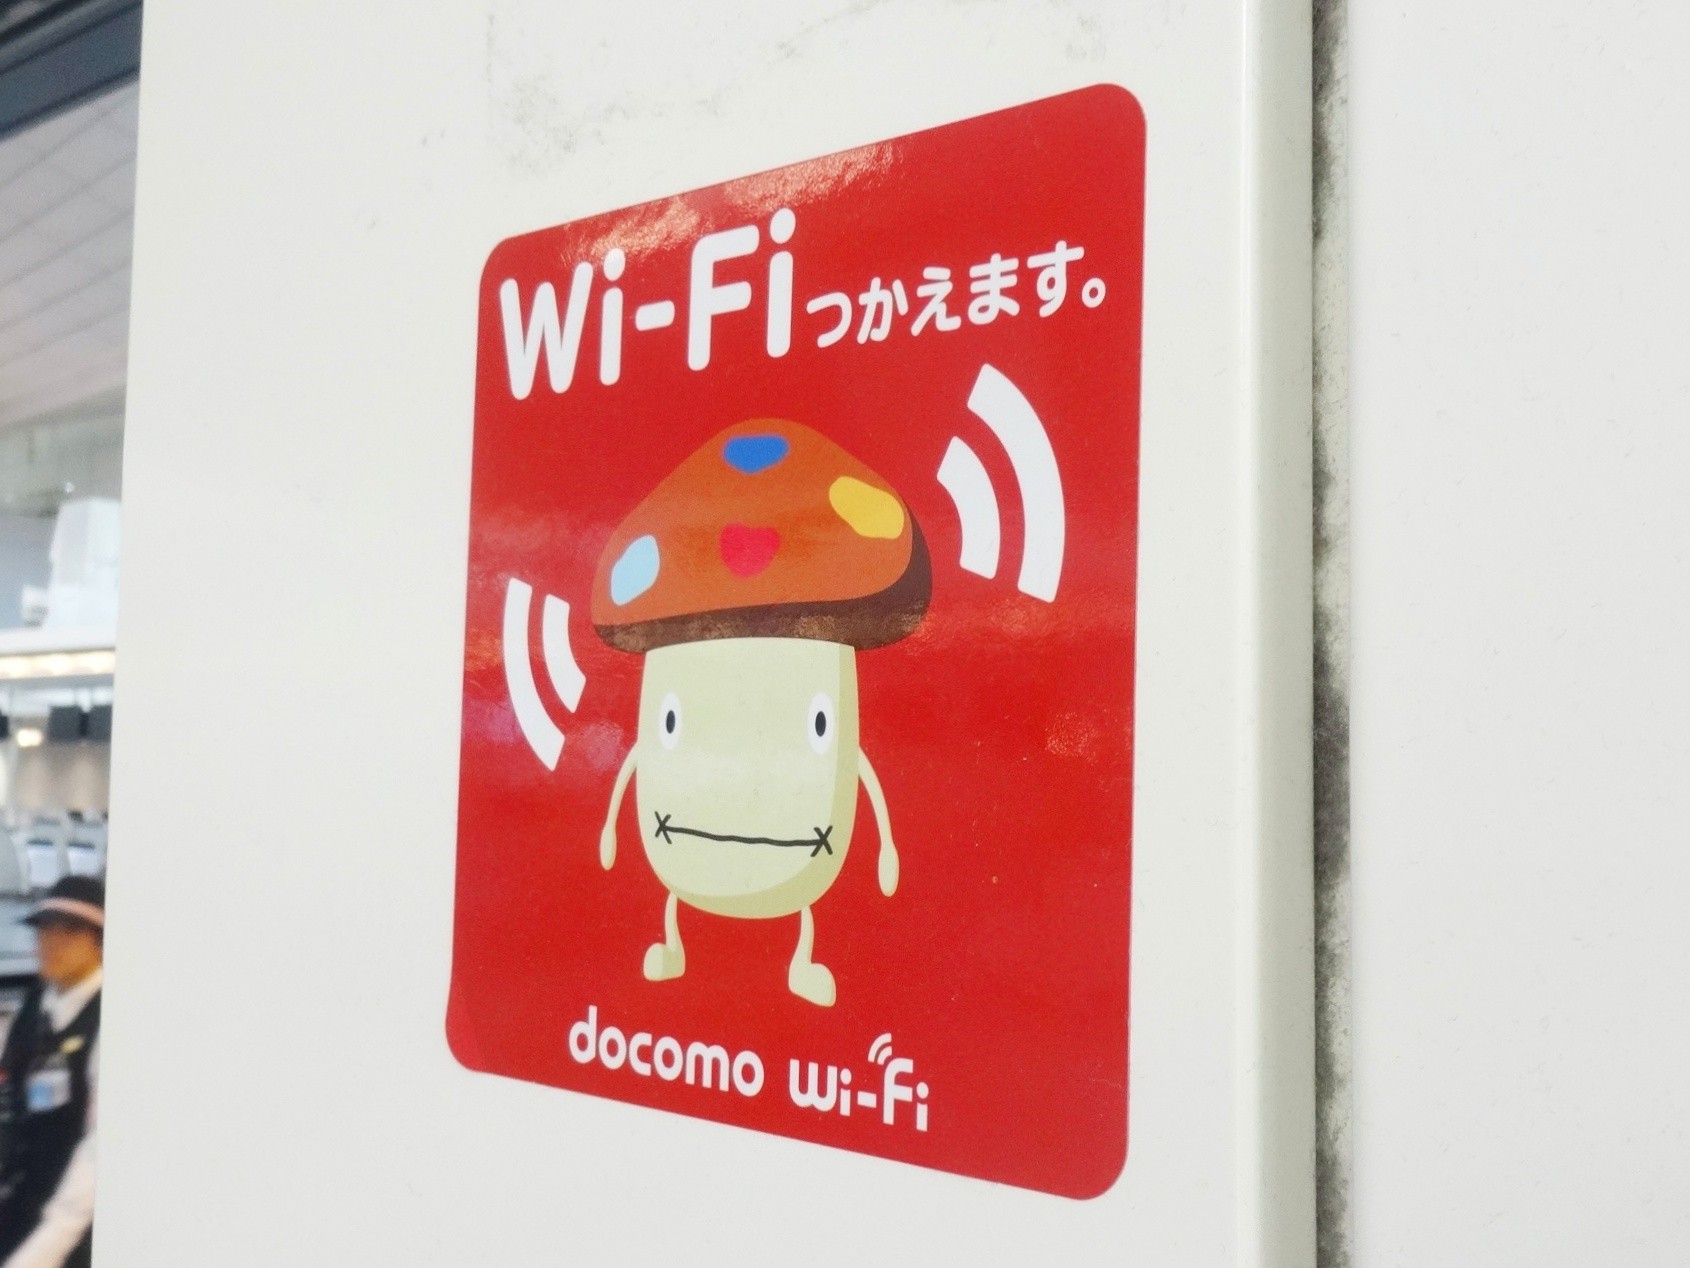 免費註冊會員就能獲得免費ｄ Wi Fi 價值300日圓的會員特典 年d Point Club最新資訊彙整